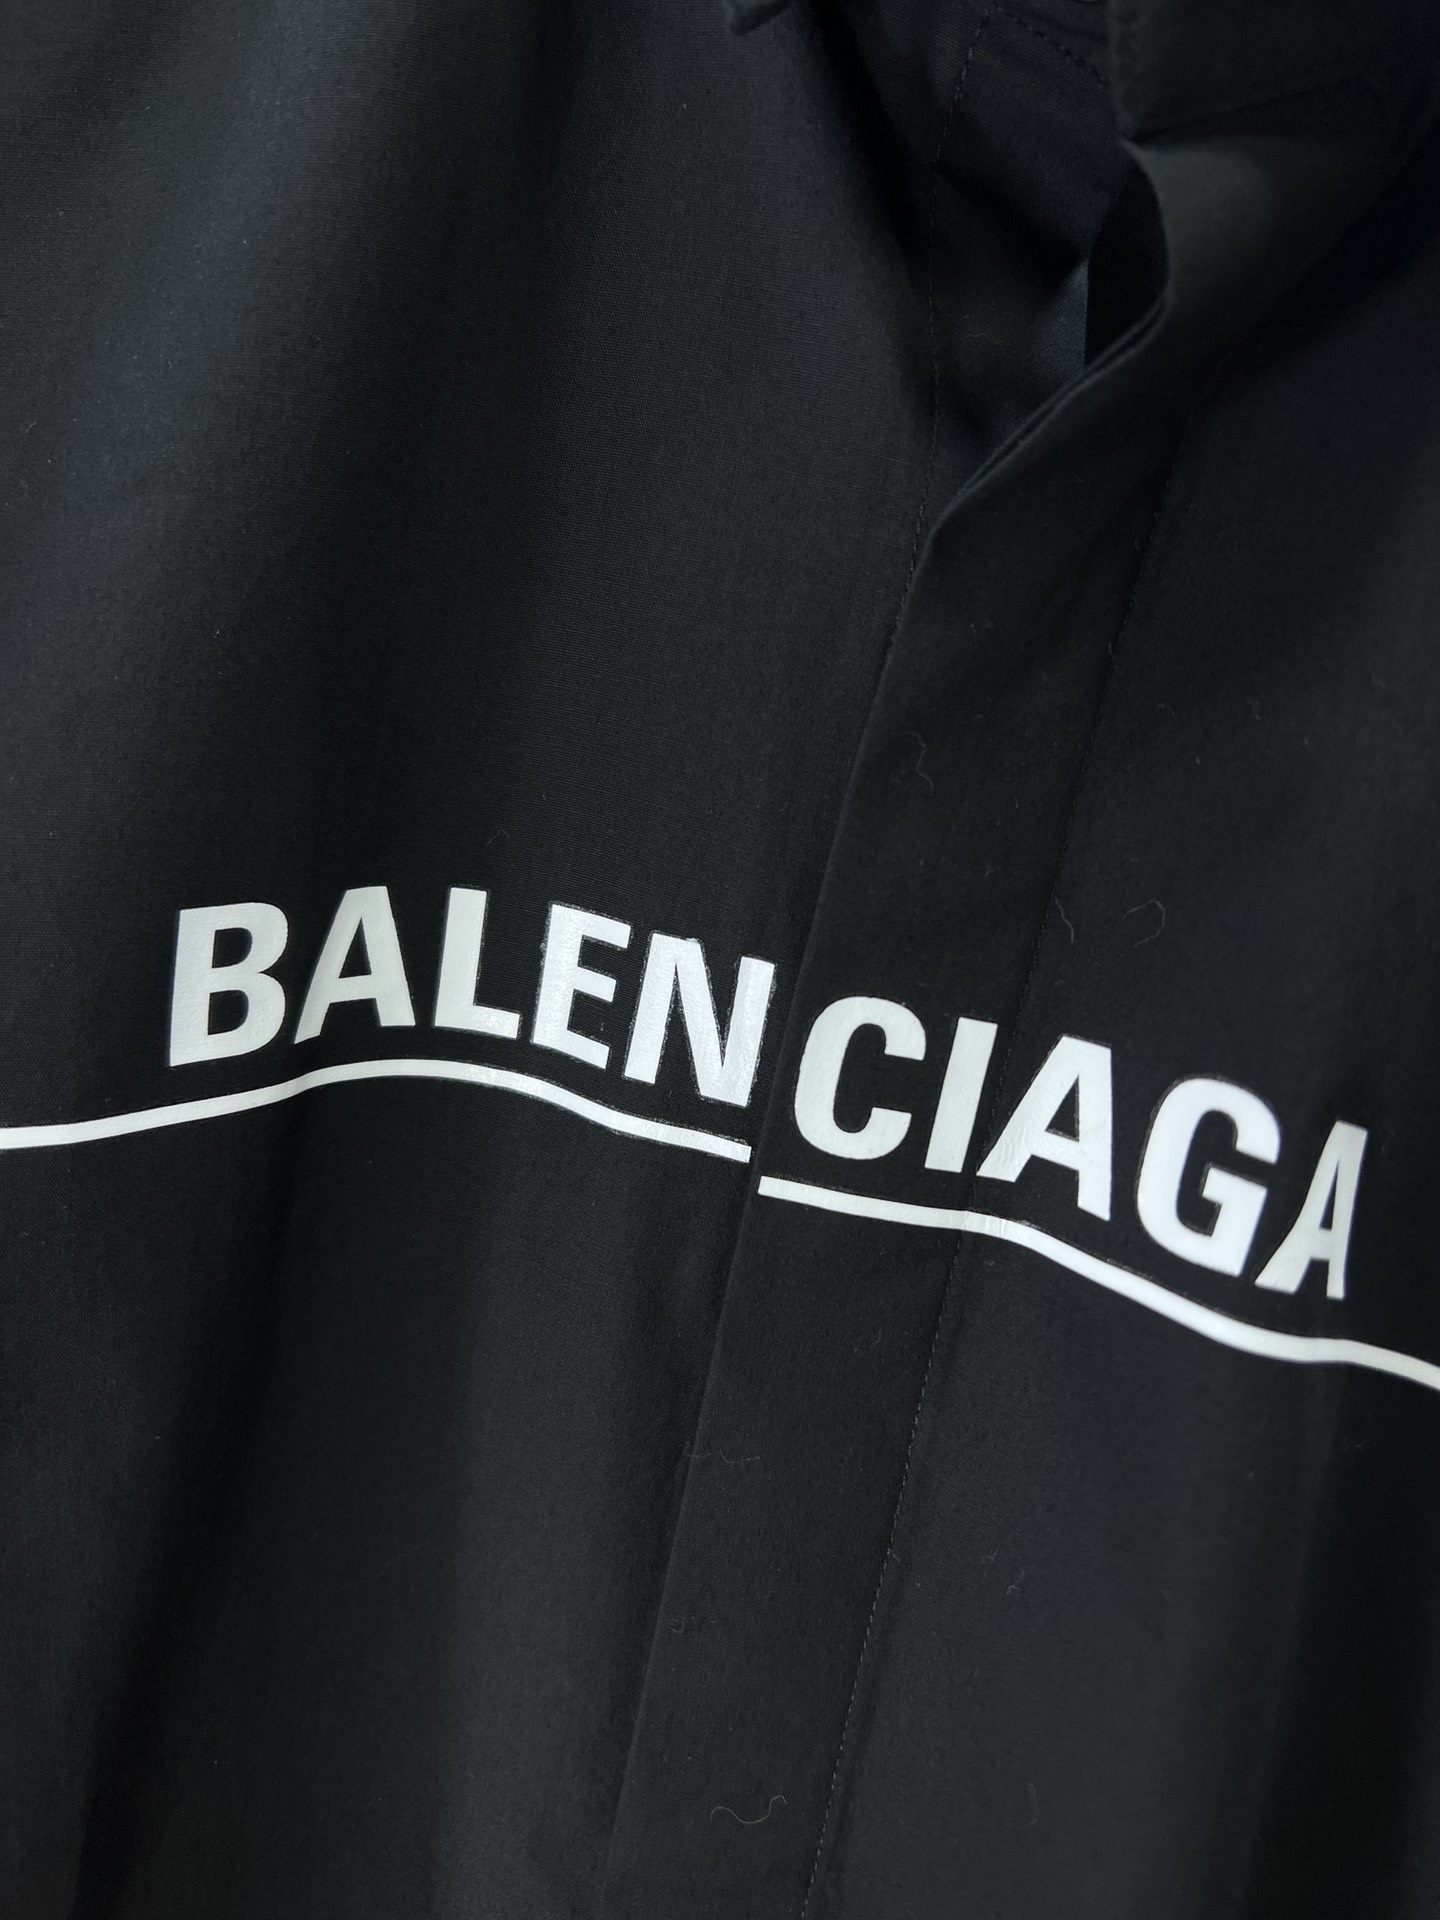 Balenciaga巴黎世家专柜最新秋款男士必备款衬衫100%天然棉舒服透气原单狠货原版面料柔软舒适1f